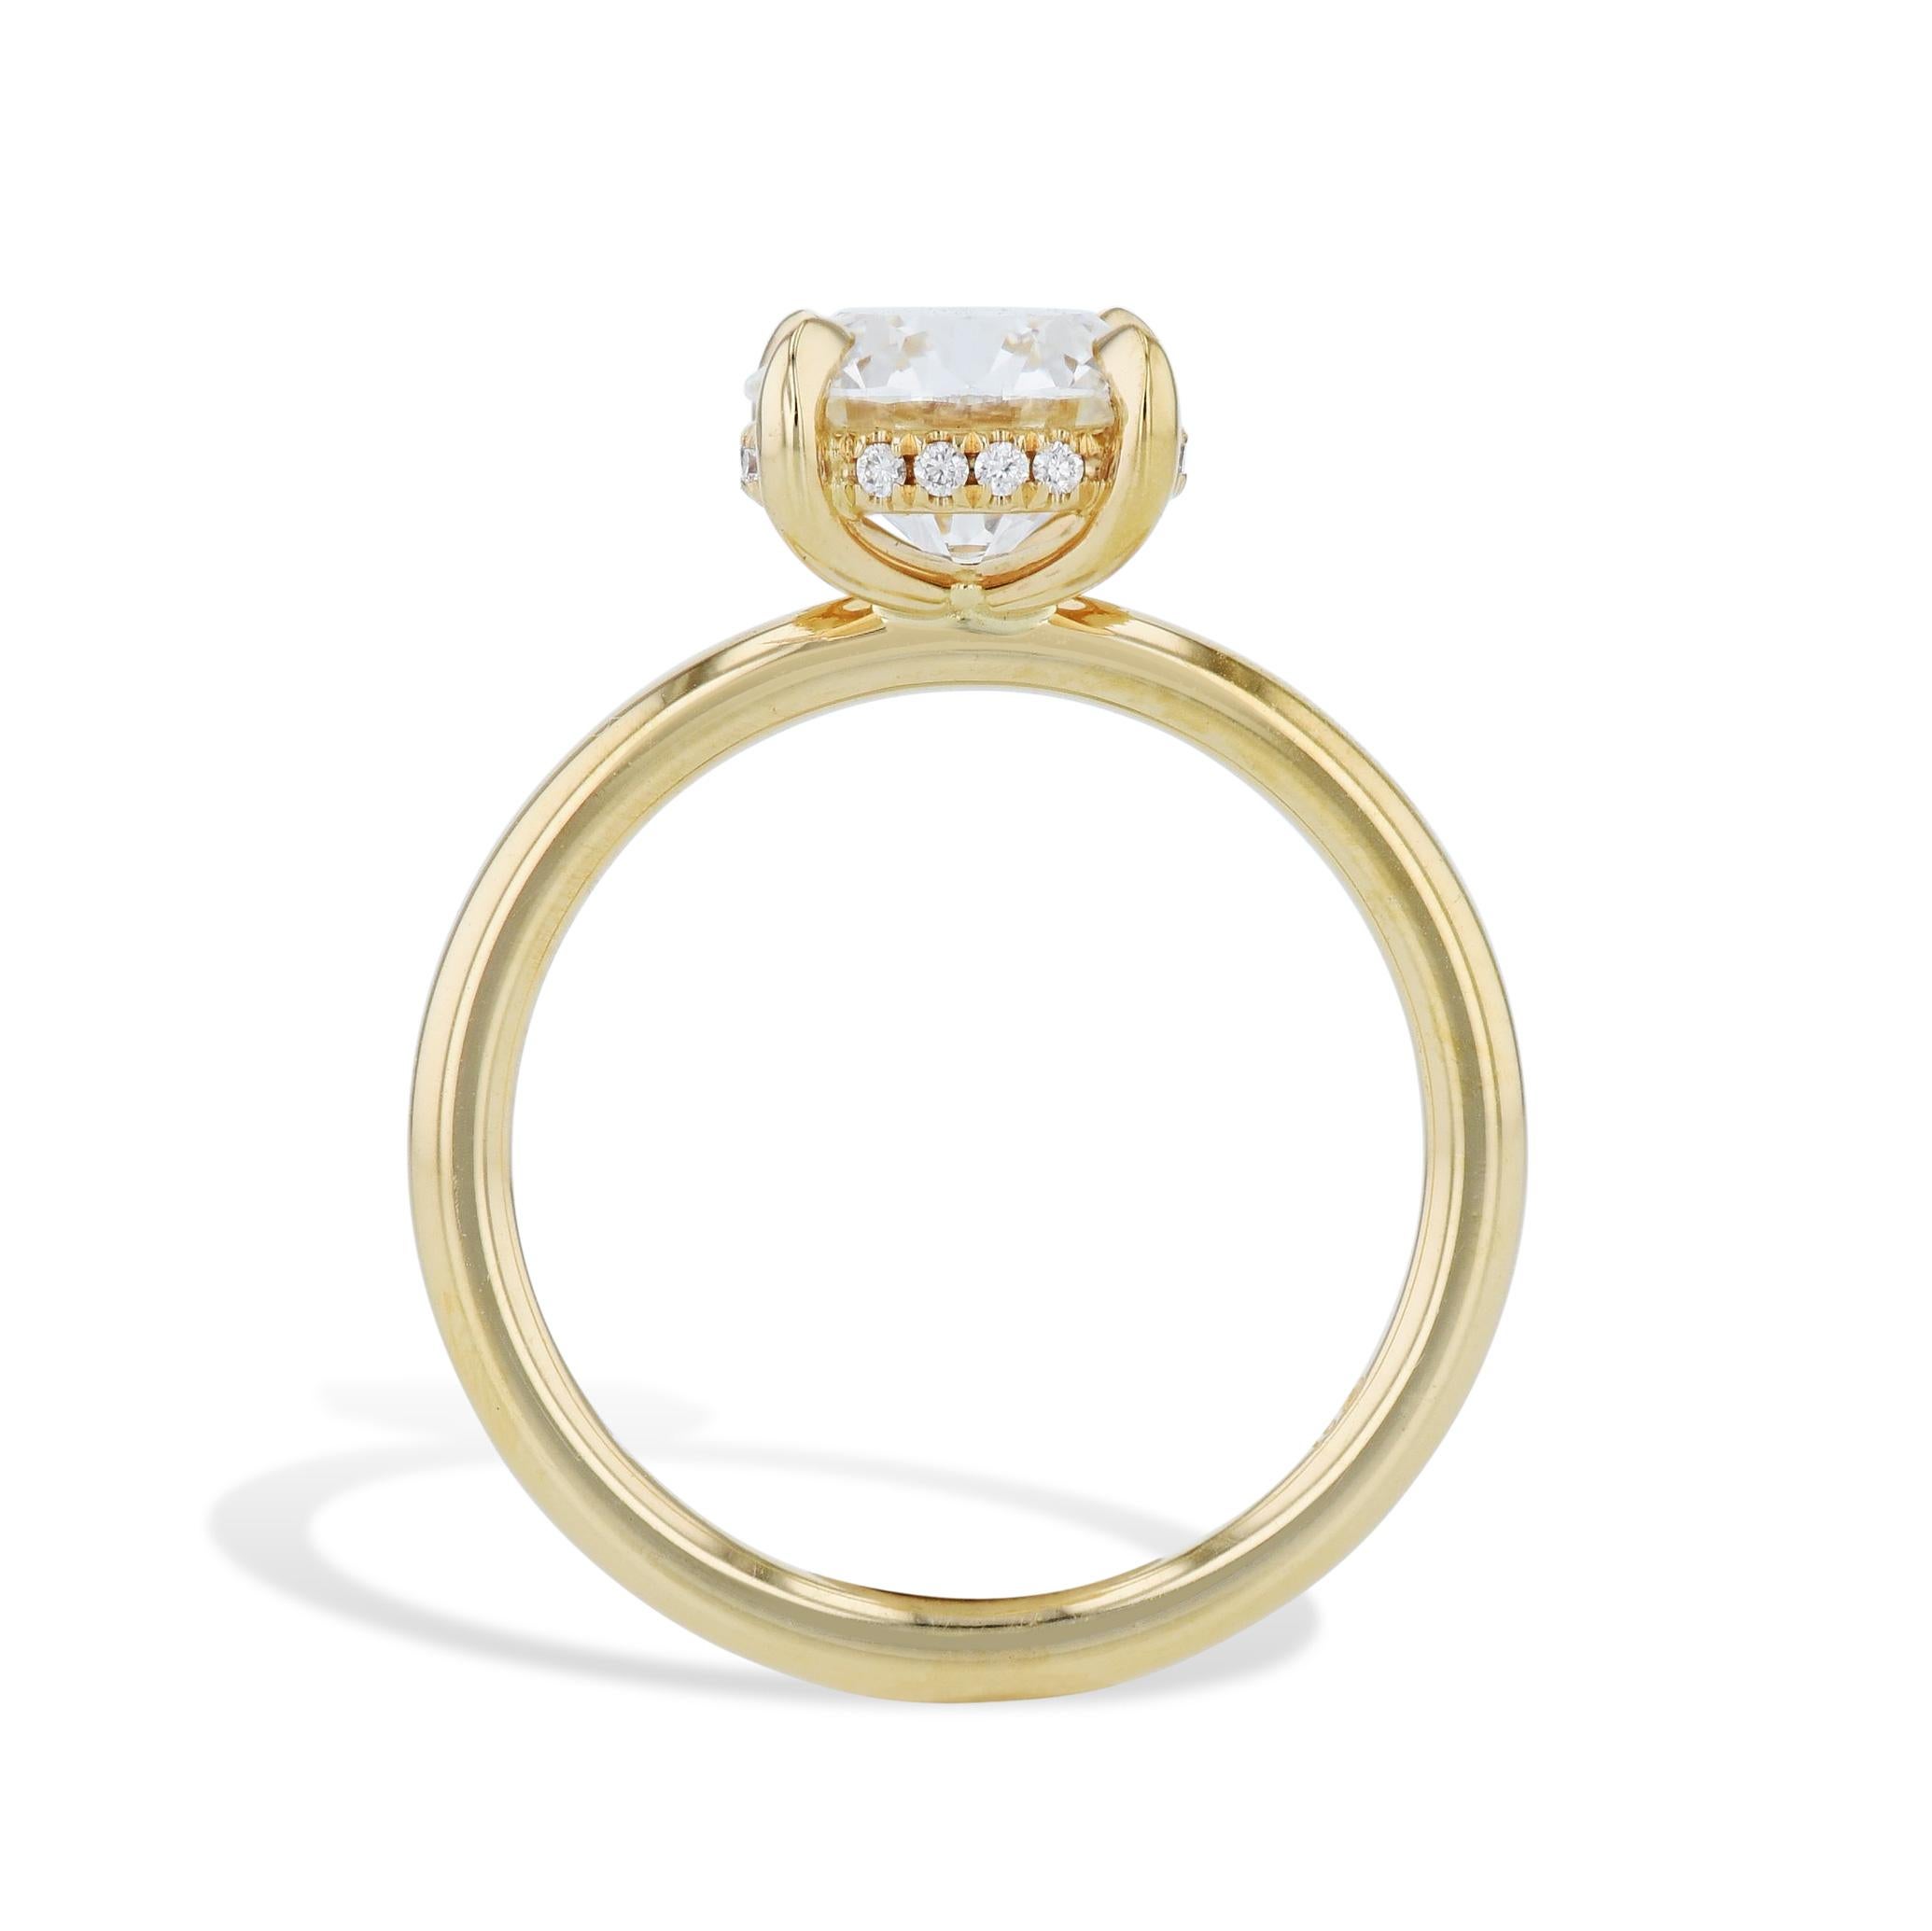 Cette magnifique bague de fiançailles en diamant rond de 2,09 carats, fabriquée à la main, donnera à votre bien-aimée l'impression d'appartenir à la royauté ! Sertie dans un luxueux boîtier de 18kt. En or jaune, le magnifique diamant central est